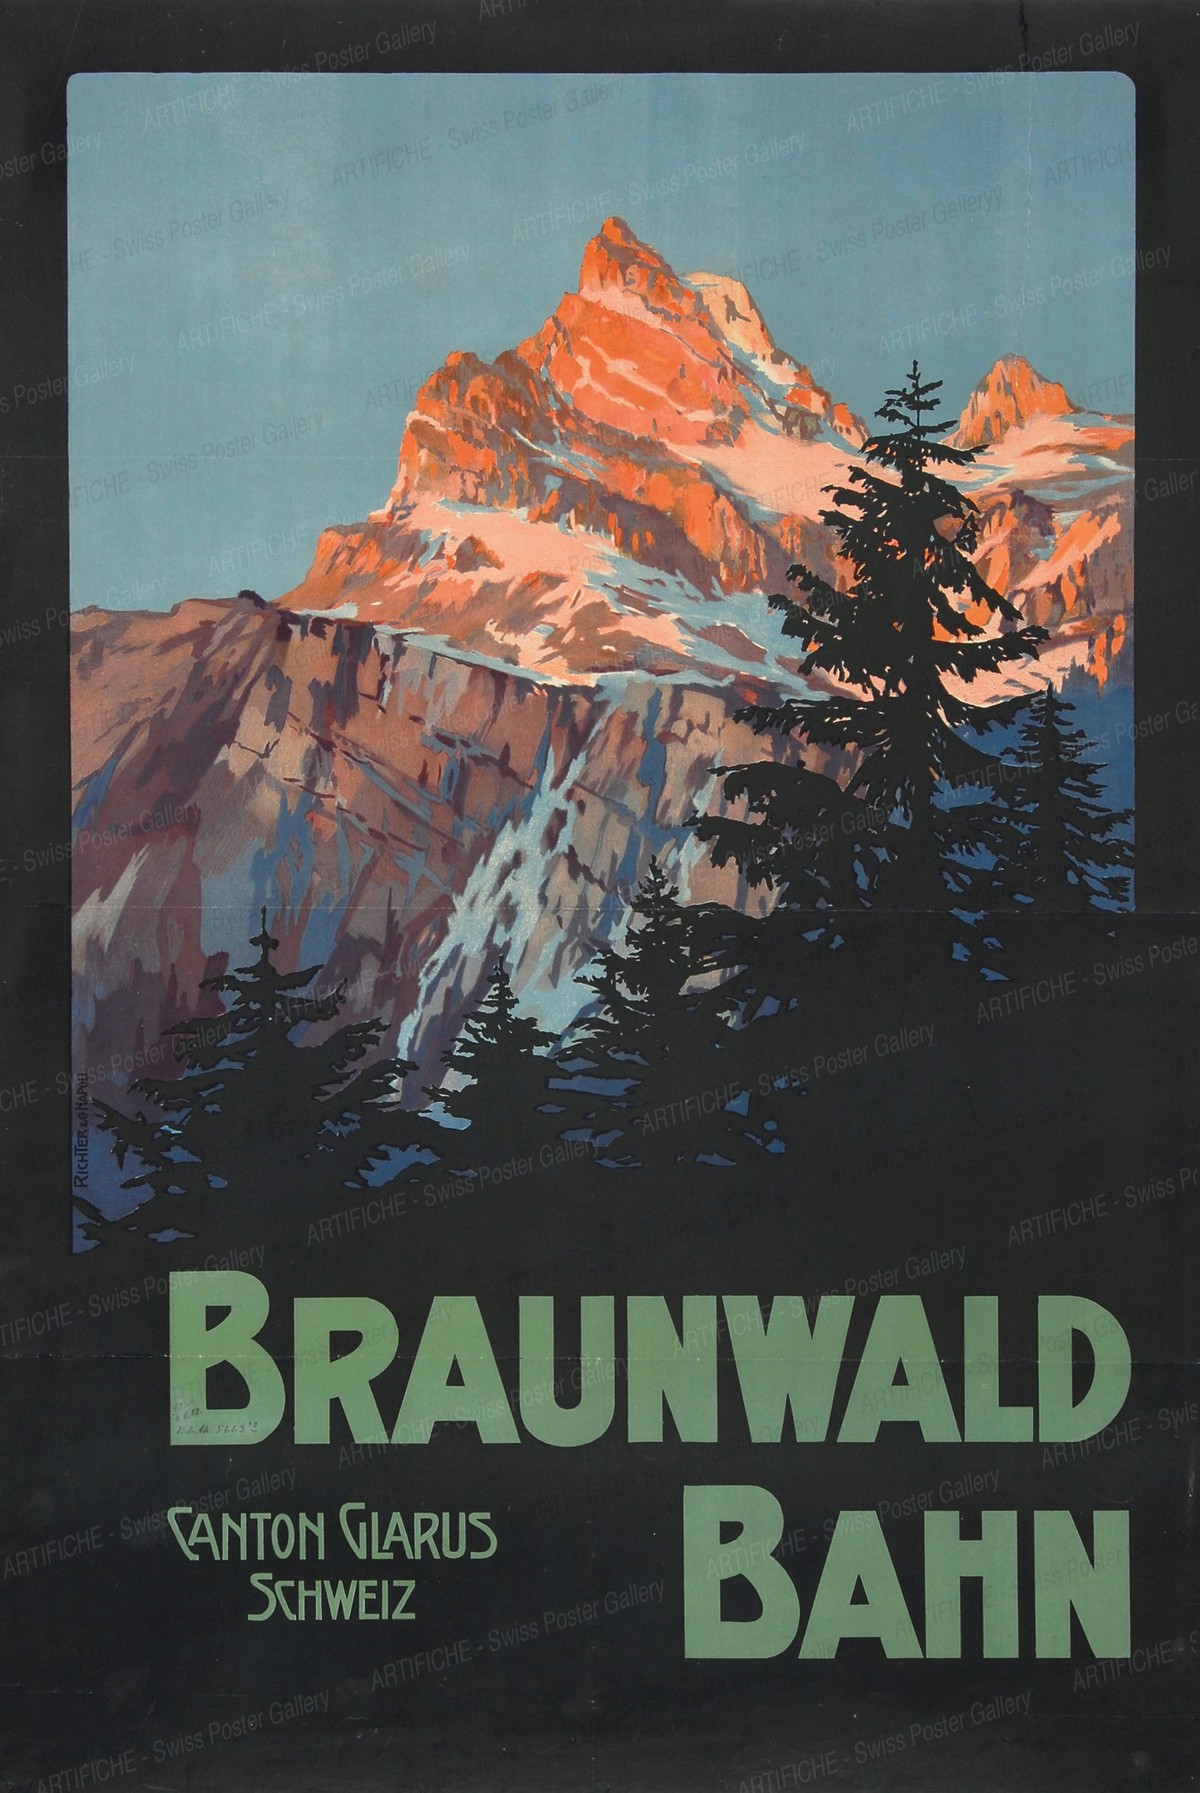 Braunwald Bahn – Canton Glarus – Schweiz, Artist unknown